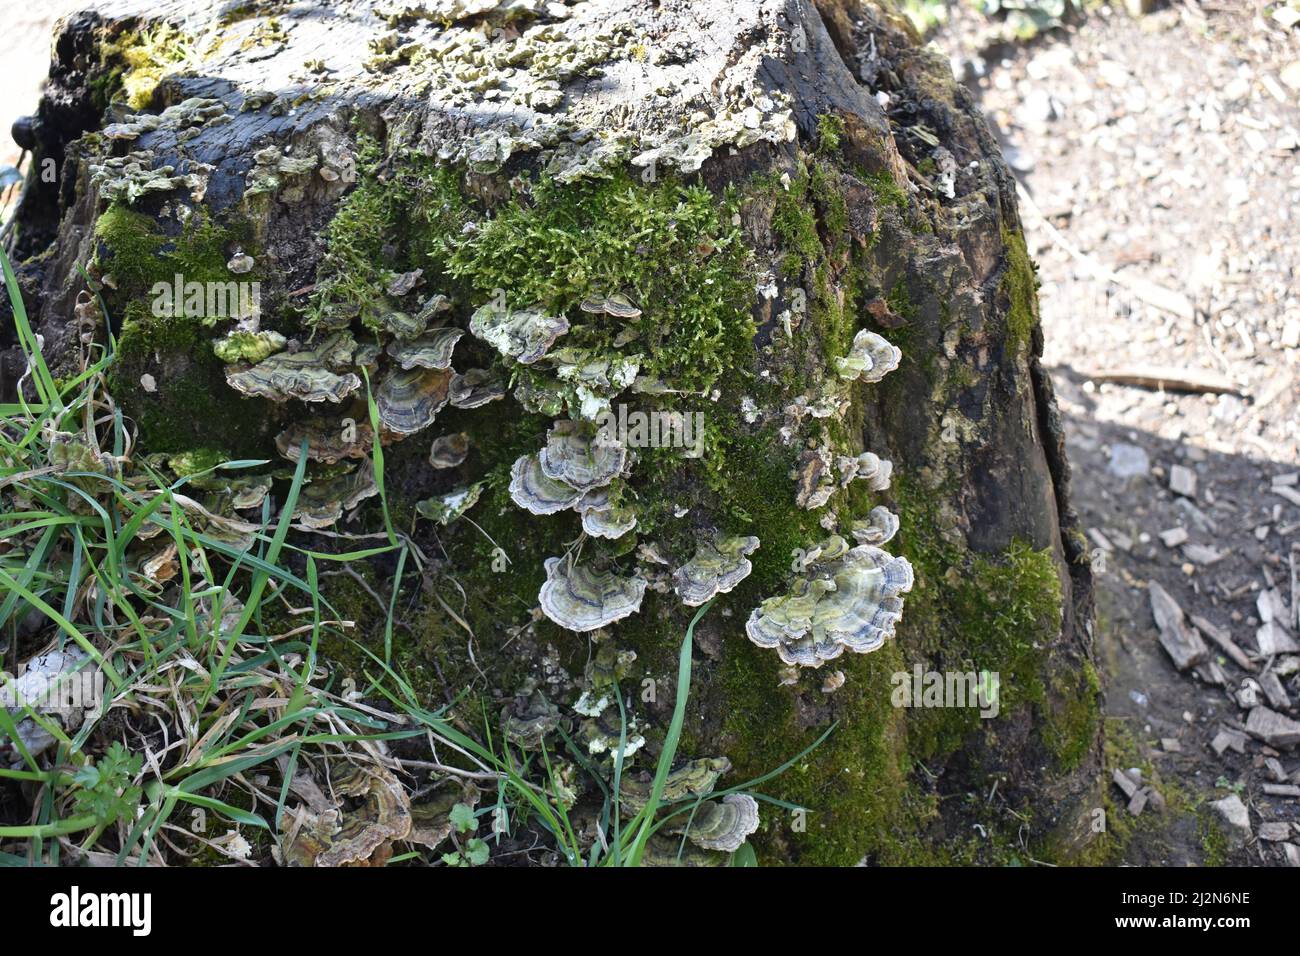 Fungi da ripiano Turkeytail (Trametes versicolor) su un ceppo di albero. Si tratta di un fungo multicolore con un bordo ondulato. Foto Stock